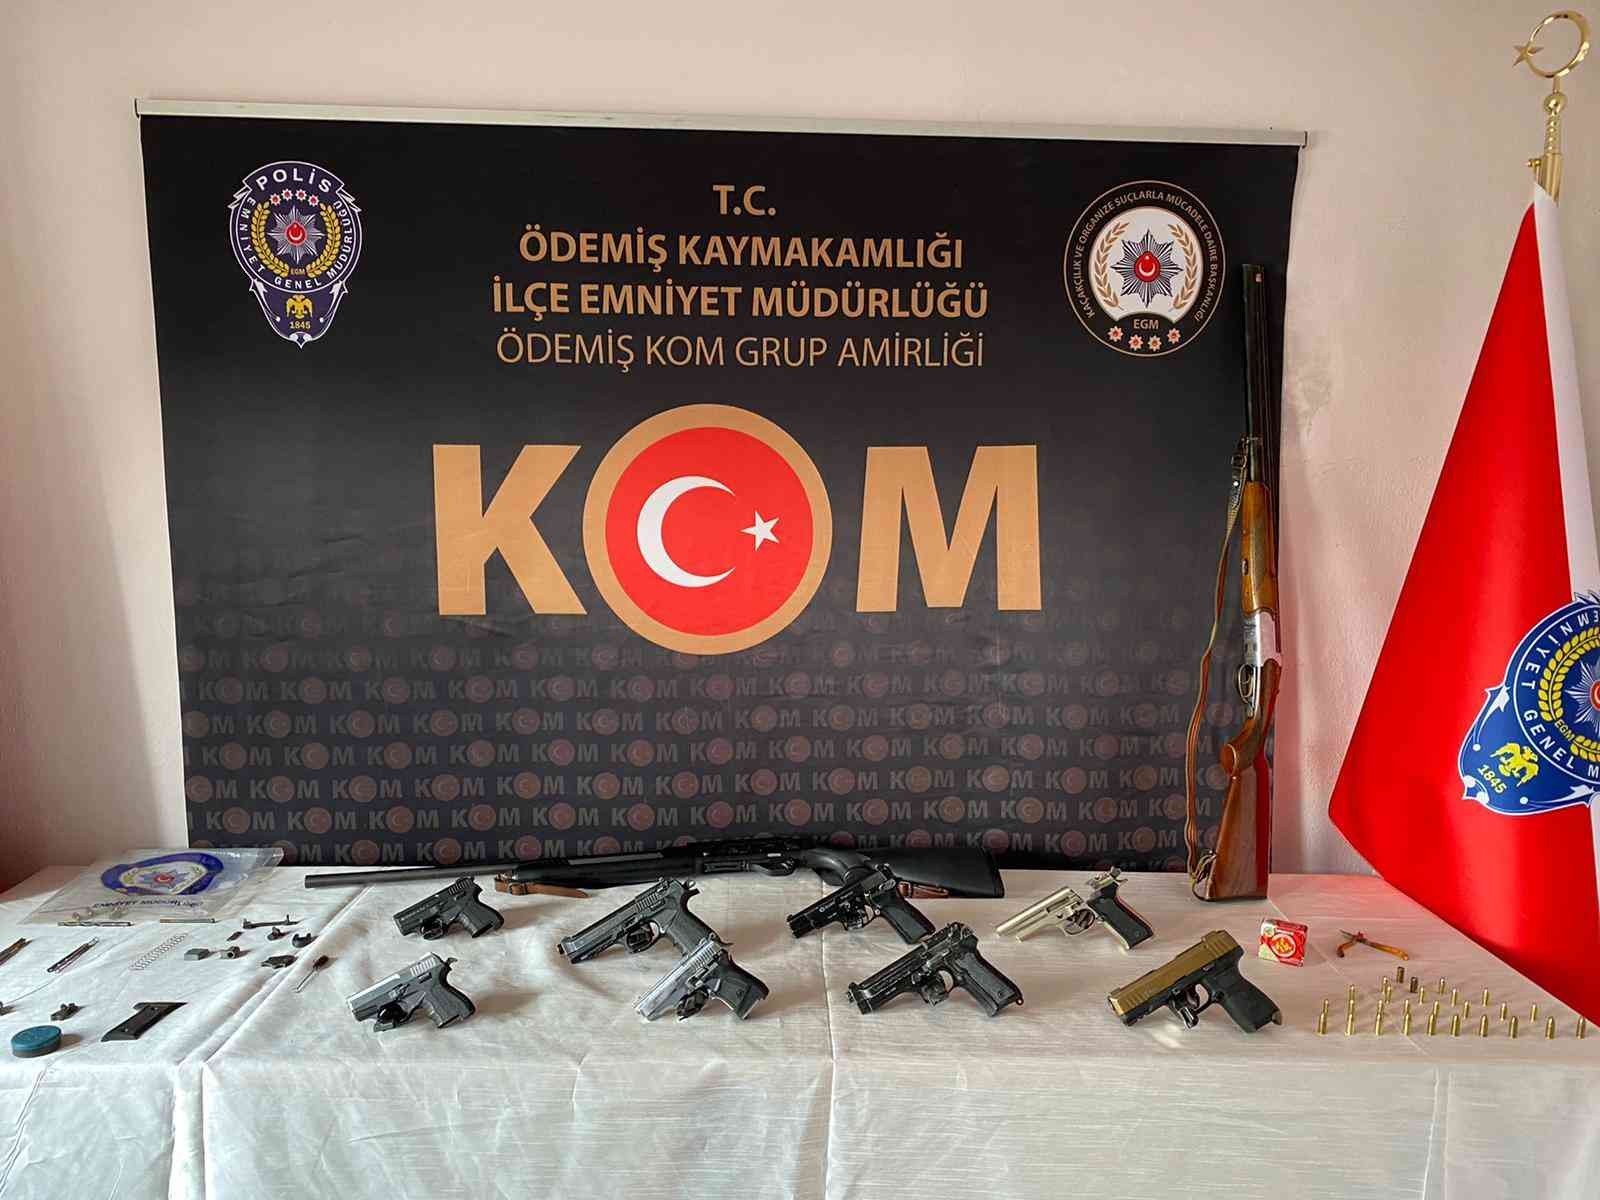 Kuru sıkıdan bozma tabanca yapan şüpheli yakalandı #izmir